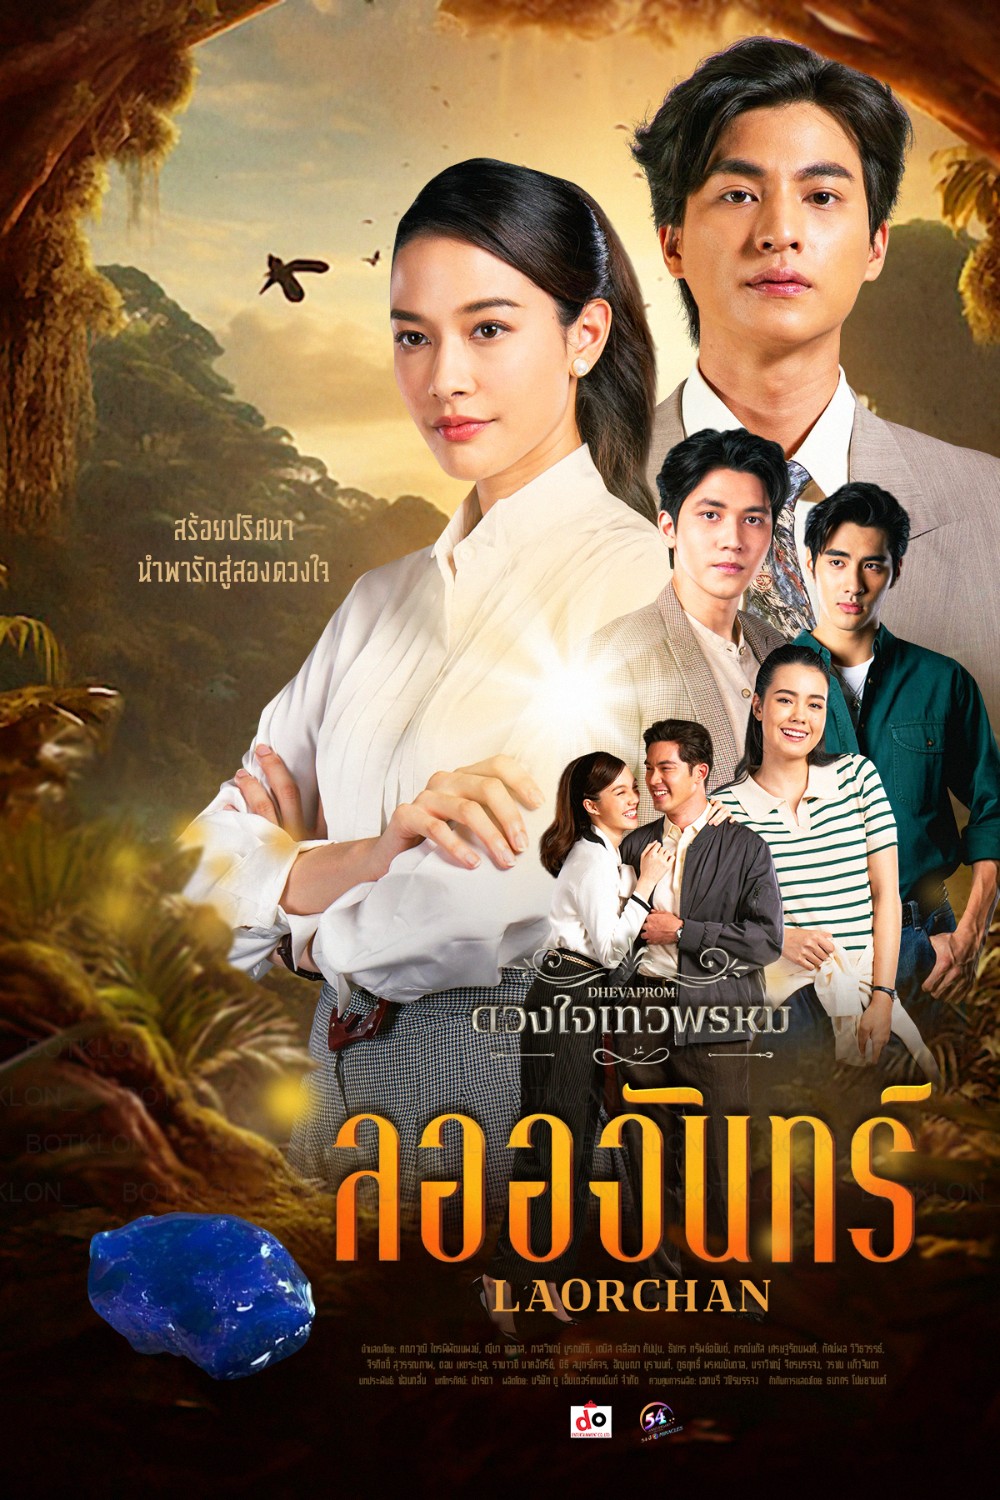 ดูหนังออนไลน์ฟรี ละครไทย Duangchai Thewa Phrom ดวงใจเทวพรหม (ตอน ลออจันทร์) พากย์ไทย